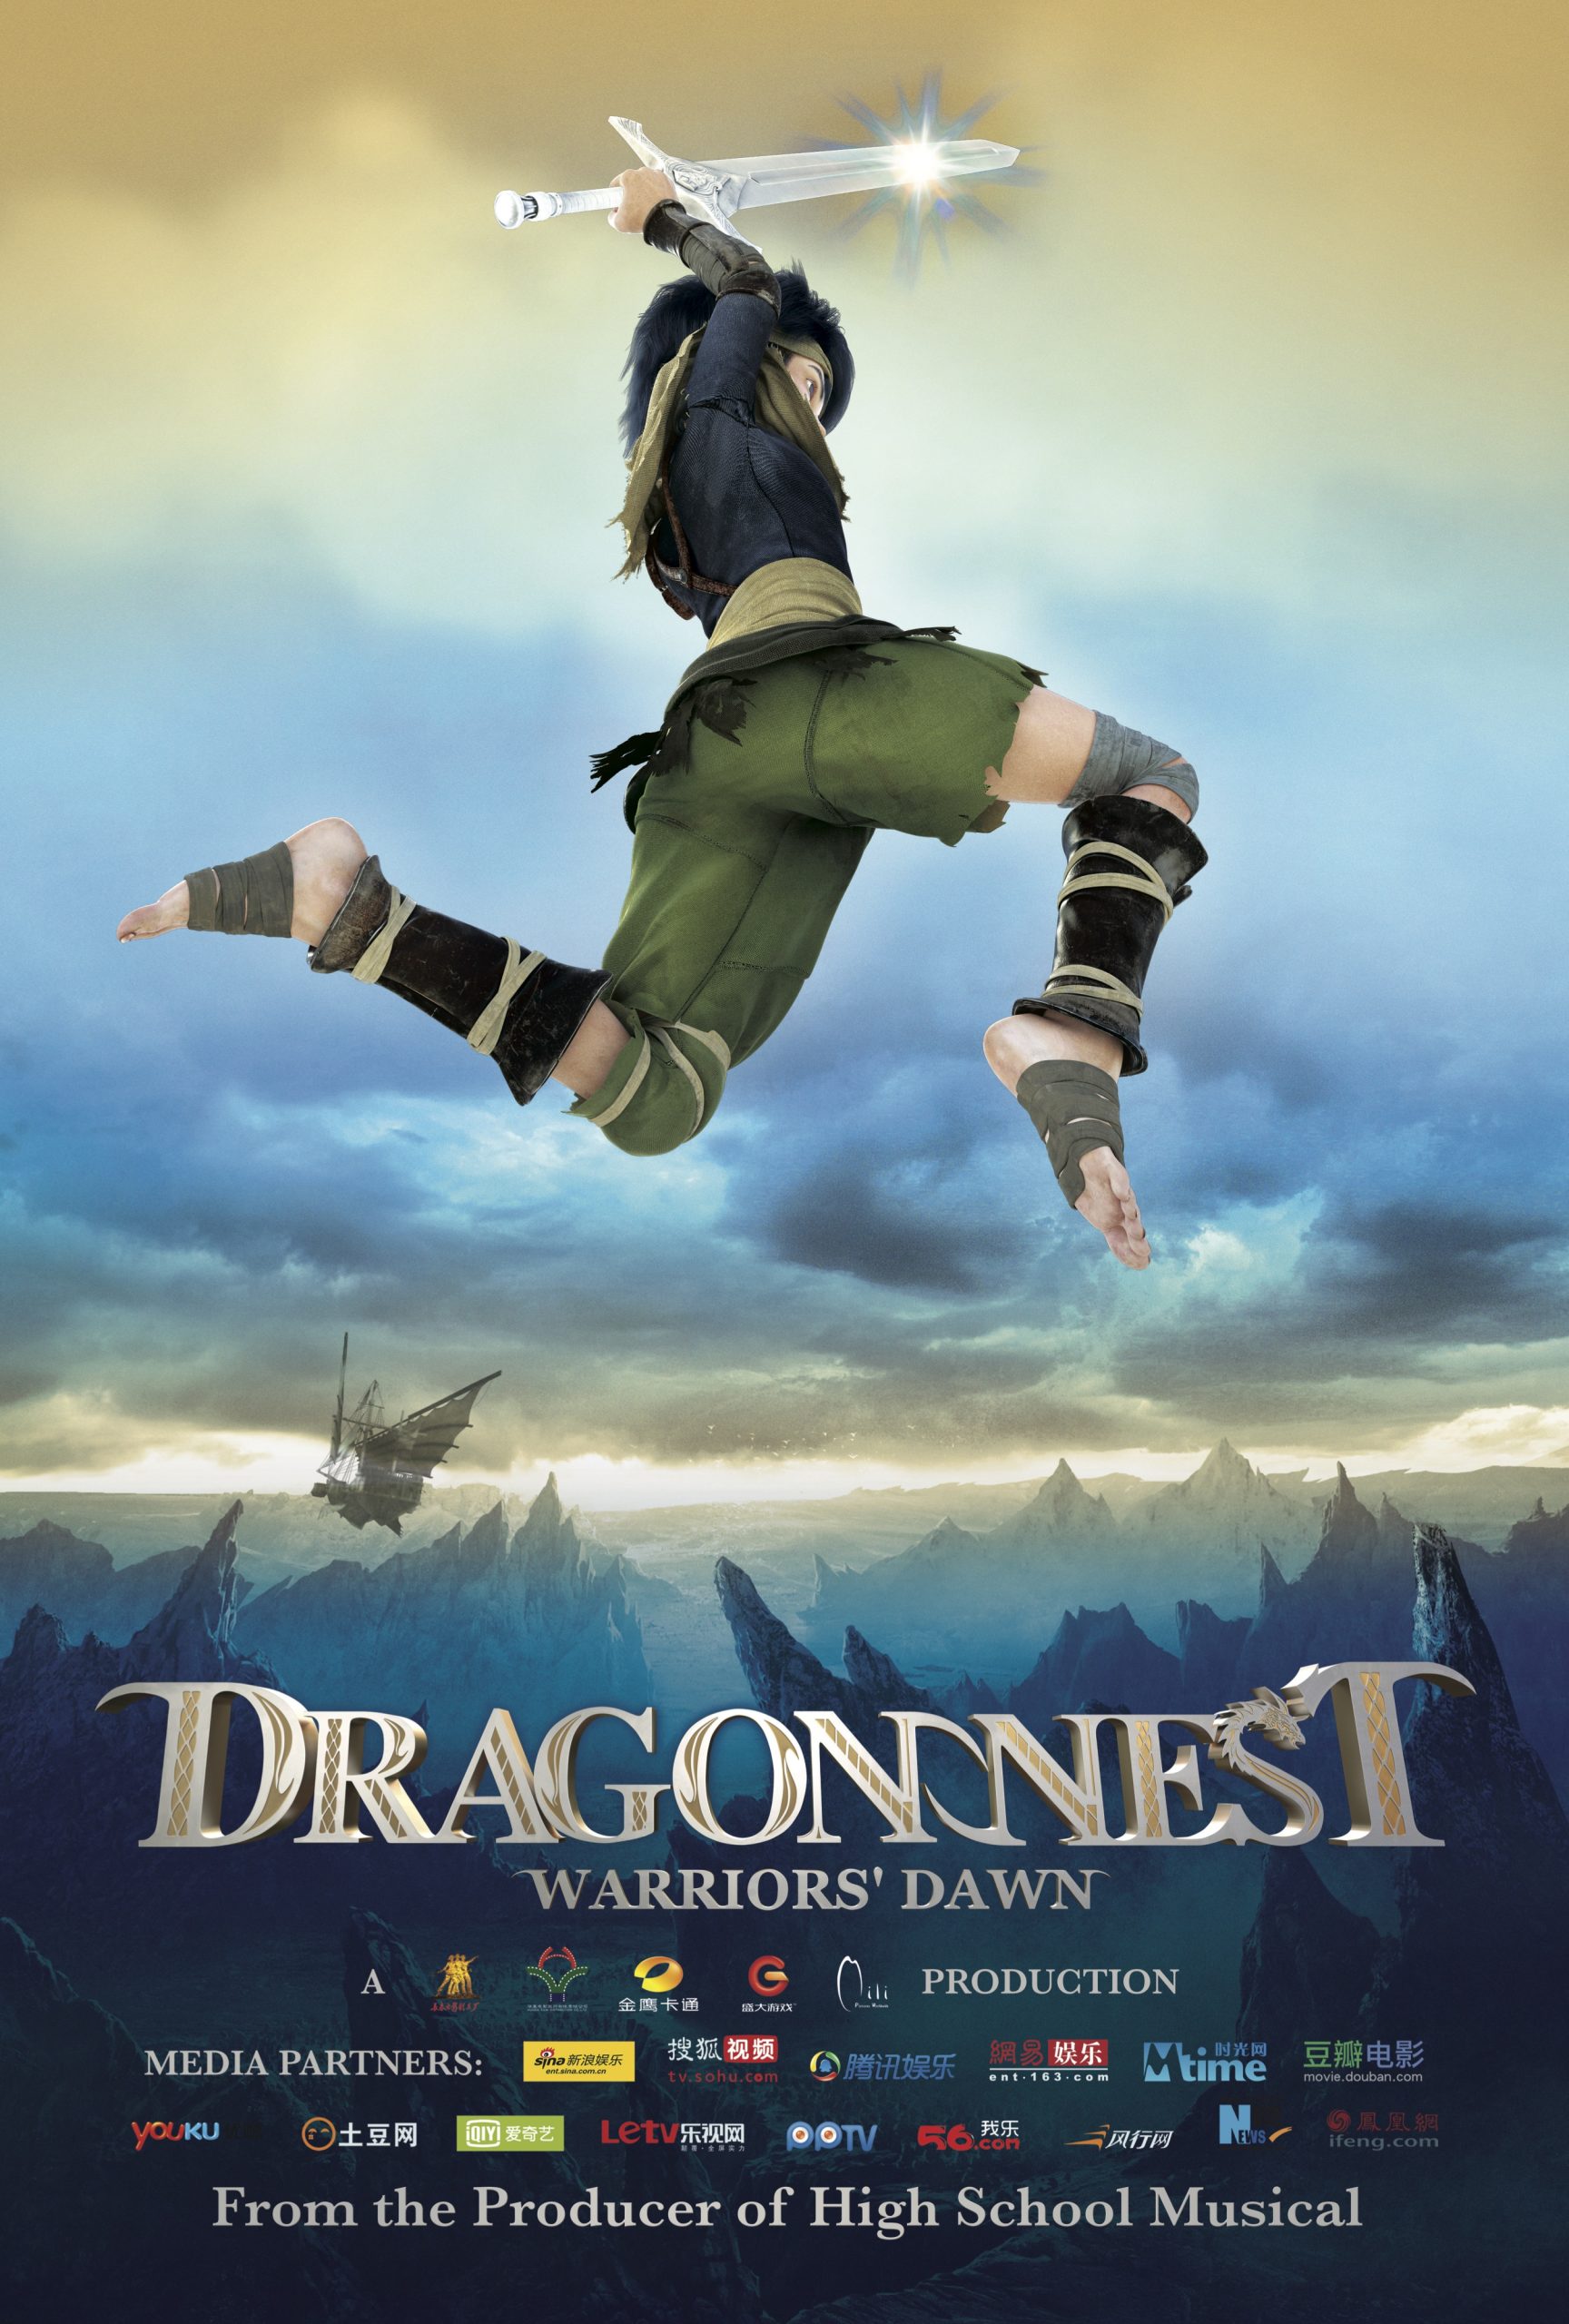 ดูหนังออนไลน์ฟรี Dragon Nest: Warriors’ Dawn อภิมหาศึกเกมล่ามังกร